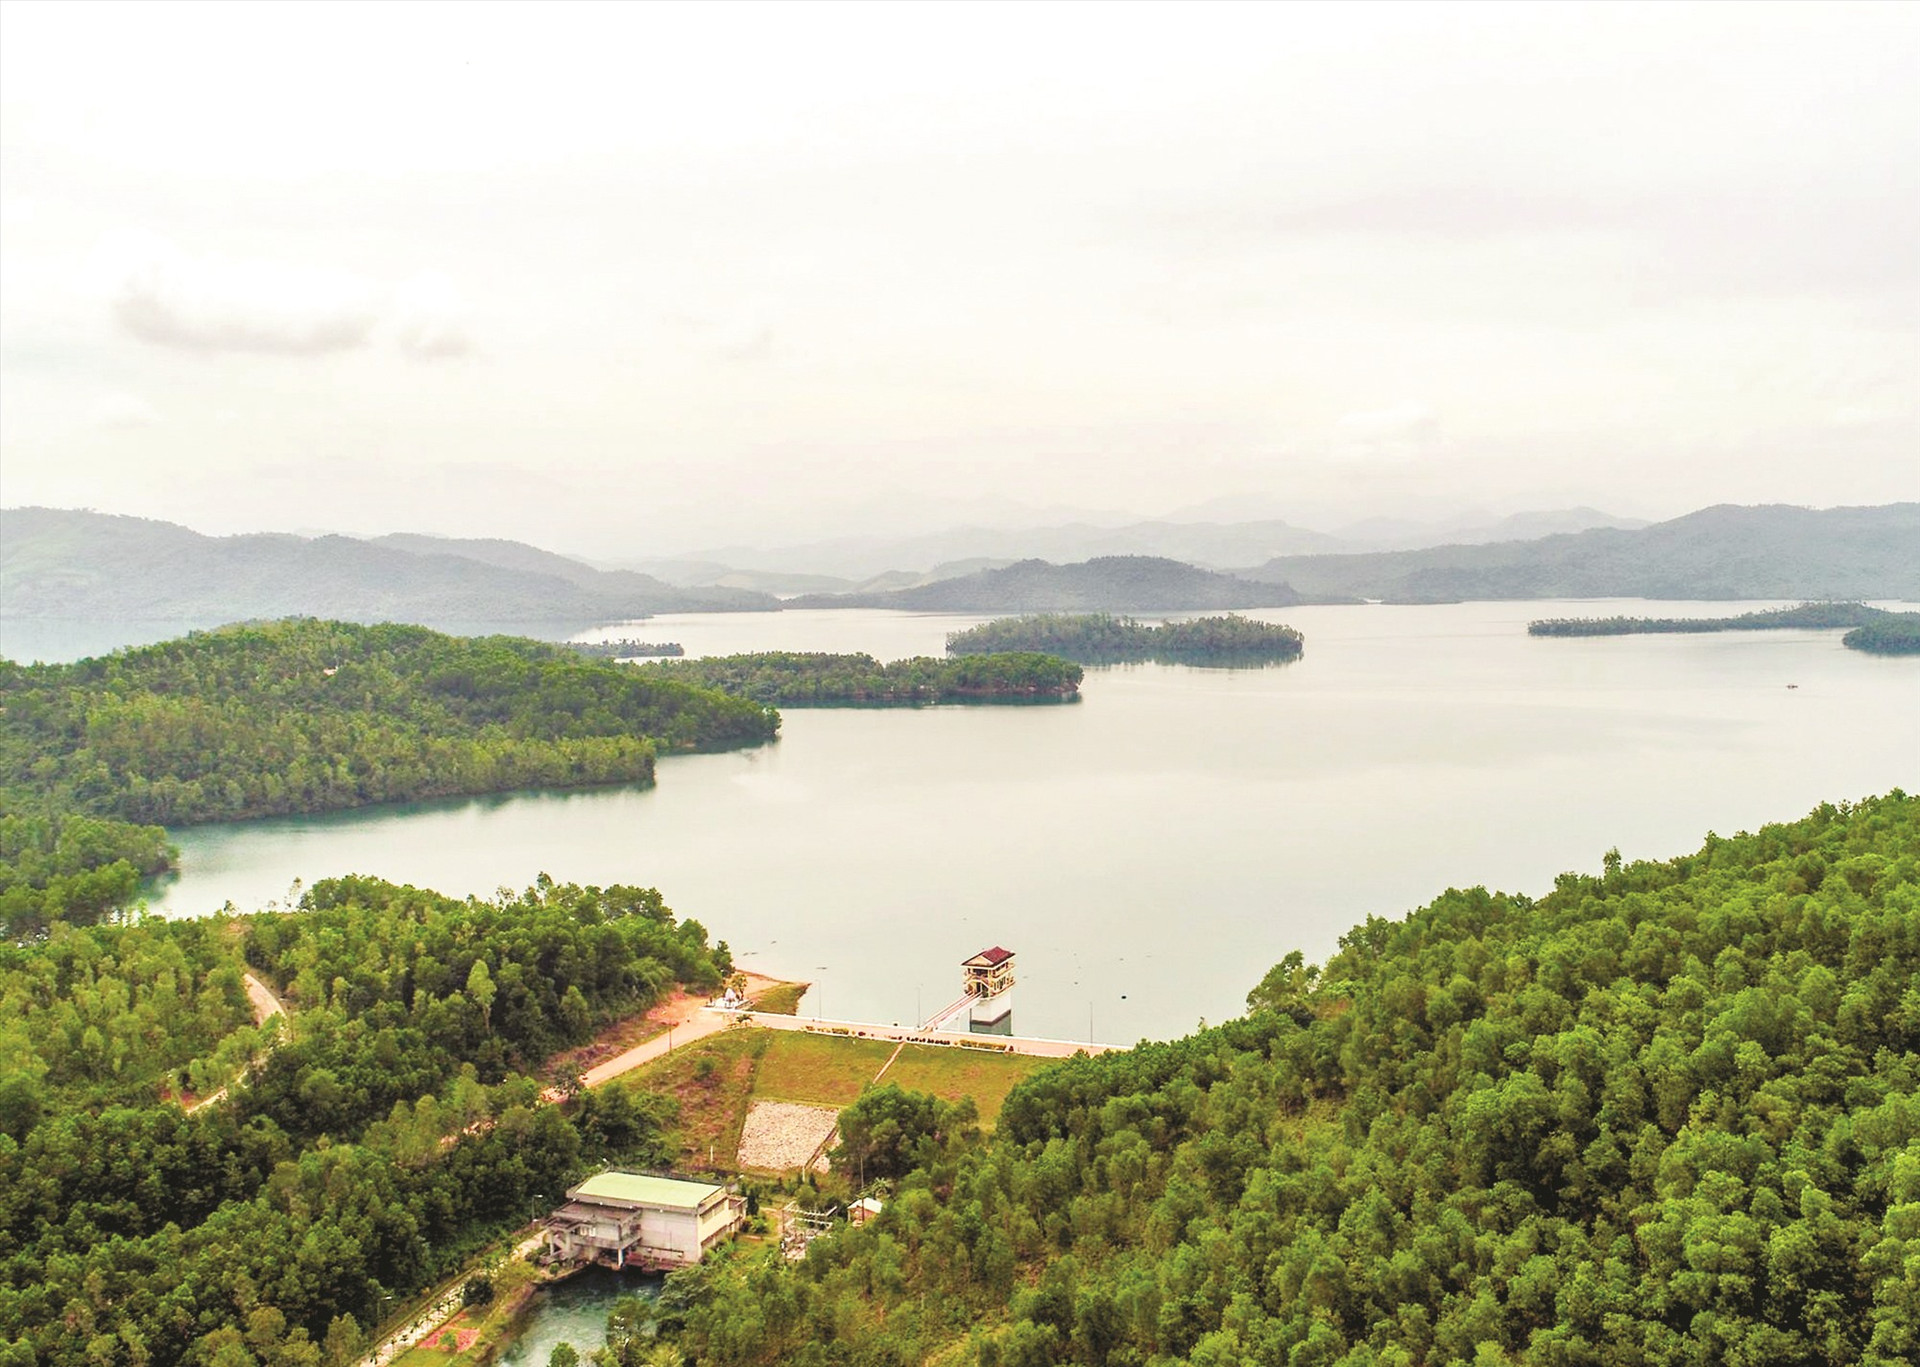 Trong khuôn khổ hoạt động REDD+, dự án Trường Sơn Xanh đã xây dựng bản đồ rủi ro mất rừng cấp độ cao cho Quảng Nam. TRONG ẢNH: Rừng phòng hộ ở khu vực lòng hồ Phú Ninh. Ảnh: PHƯƠNG THẢO